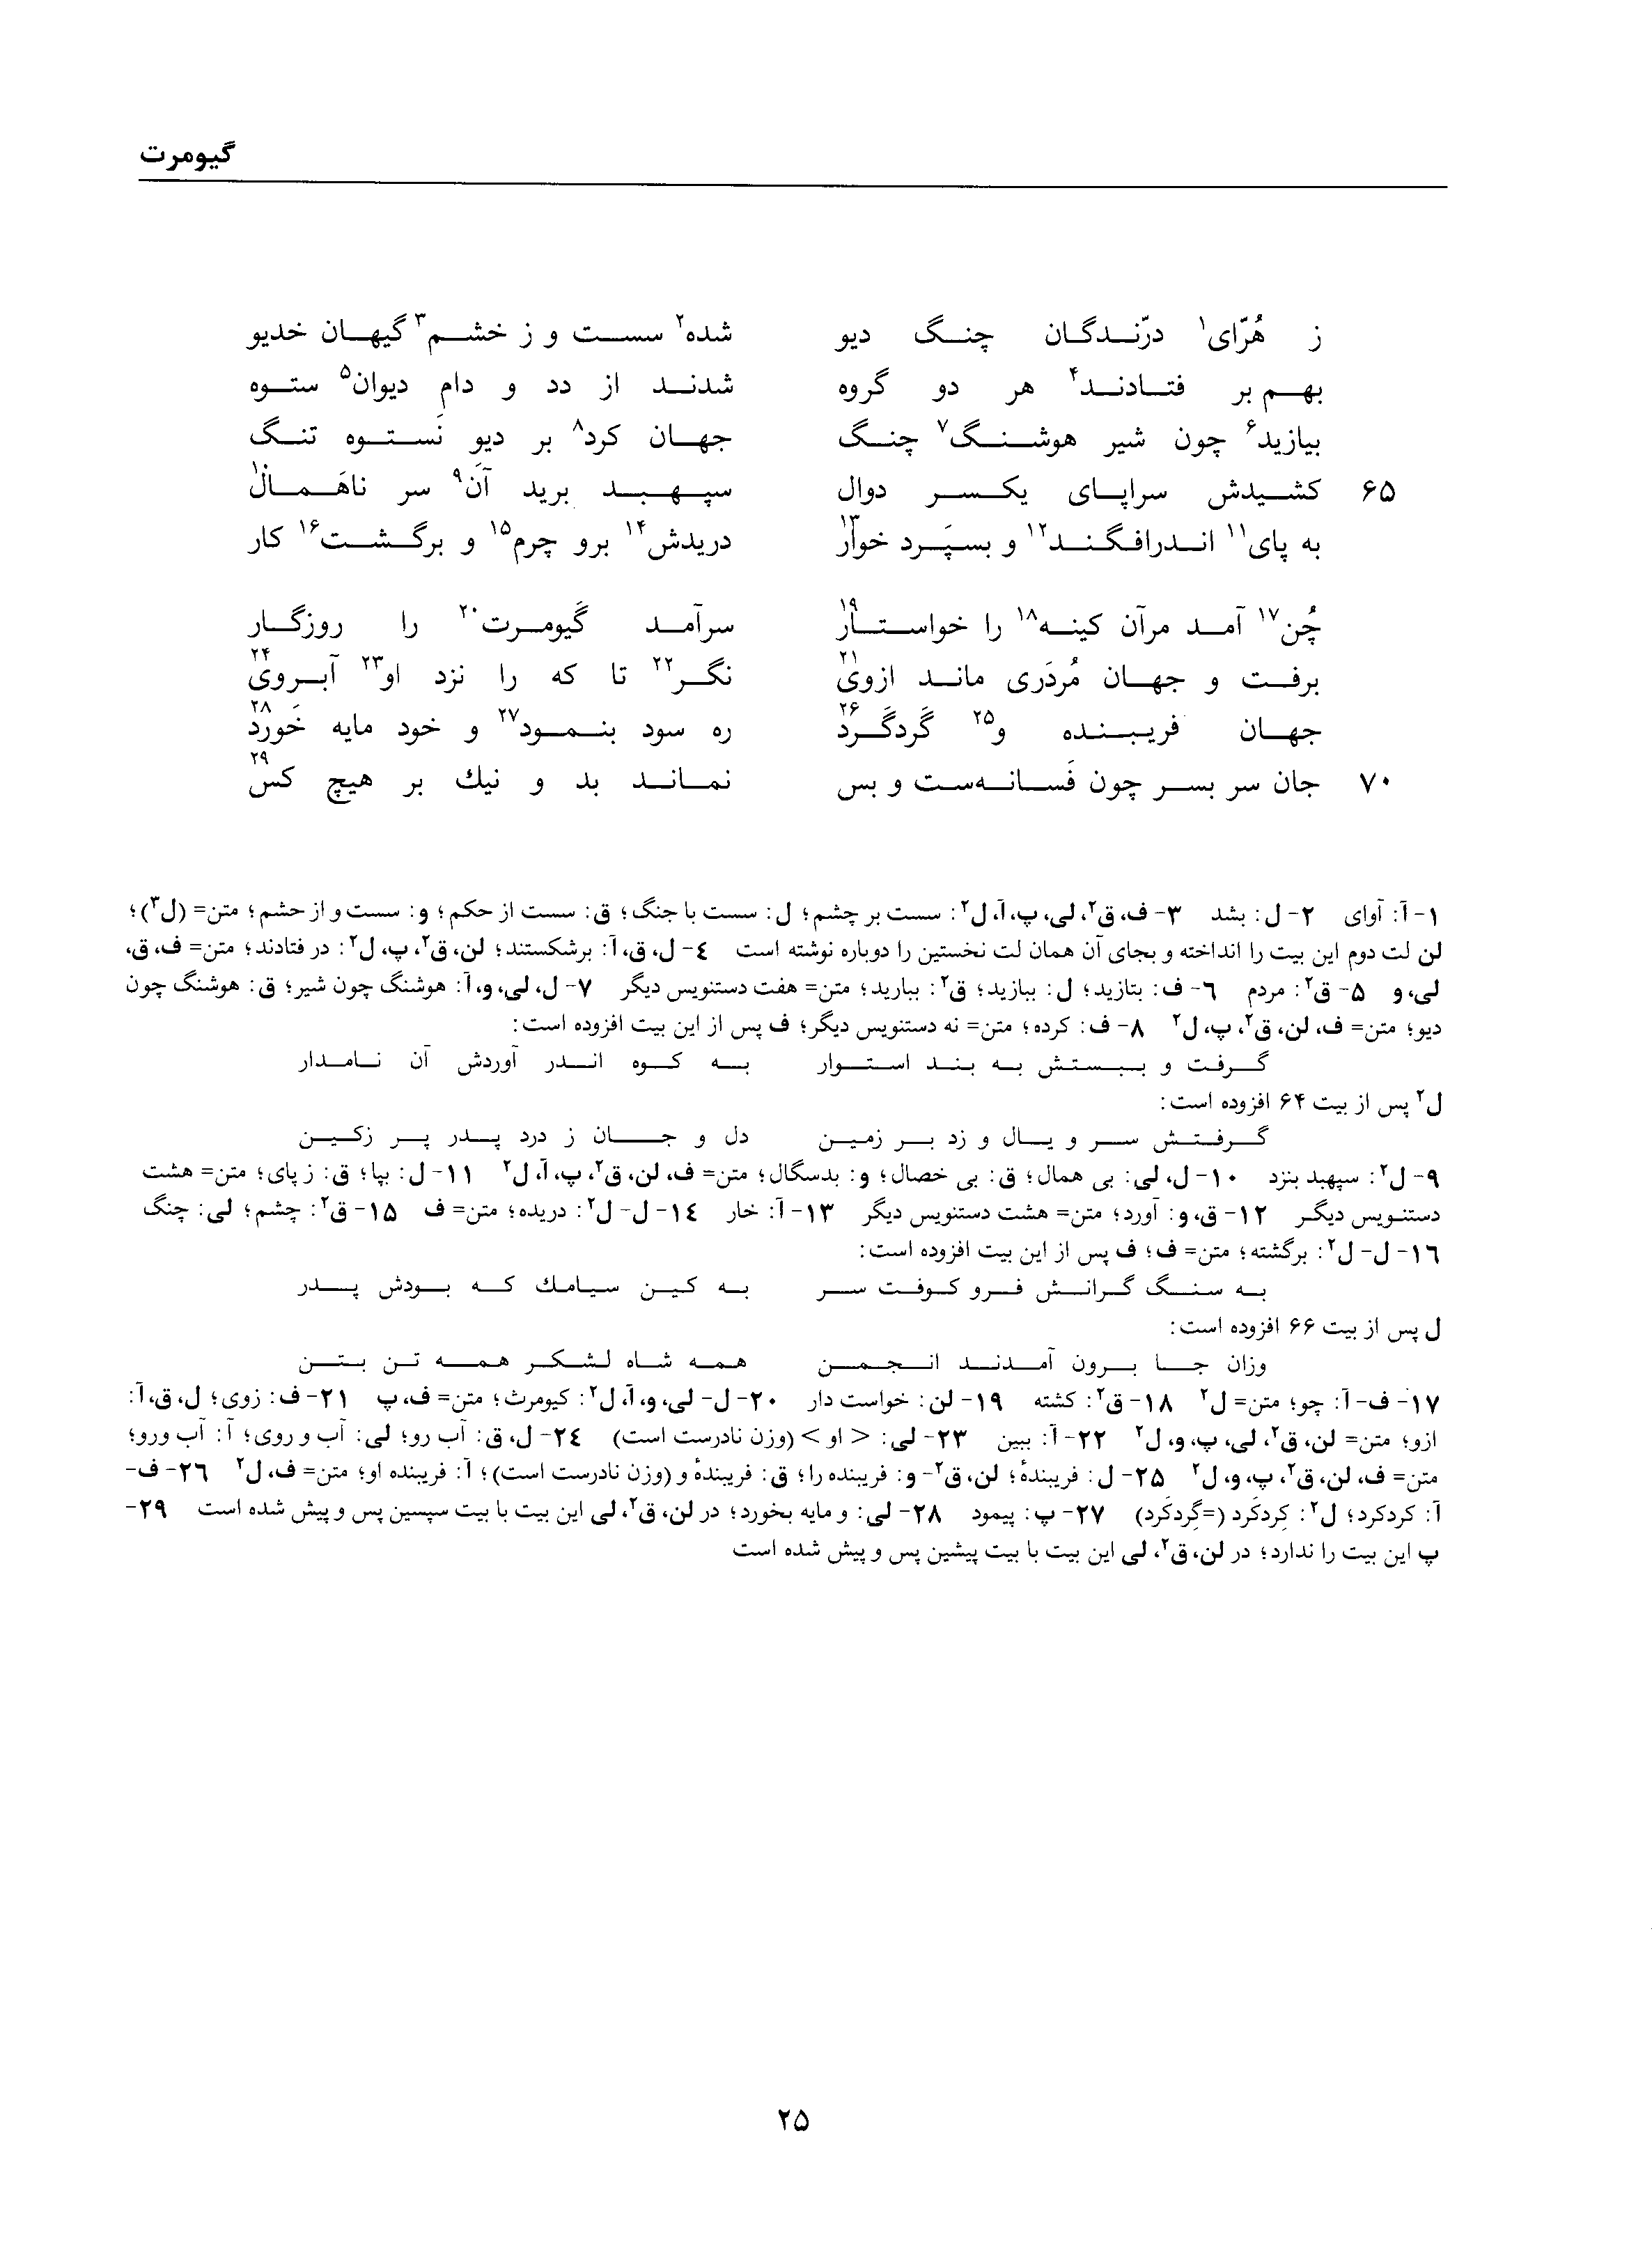 vol. 1, p. 25